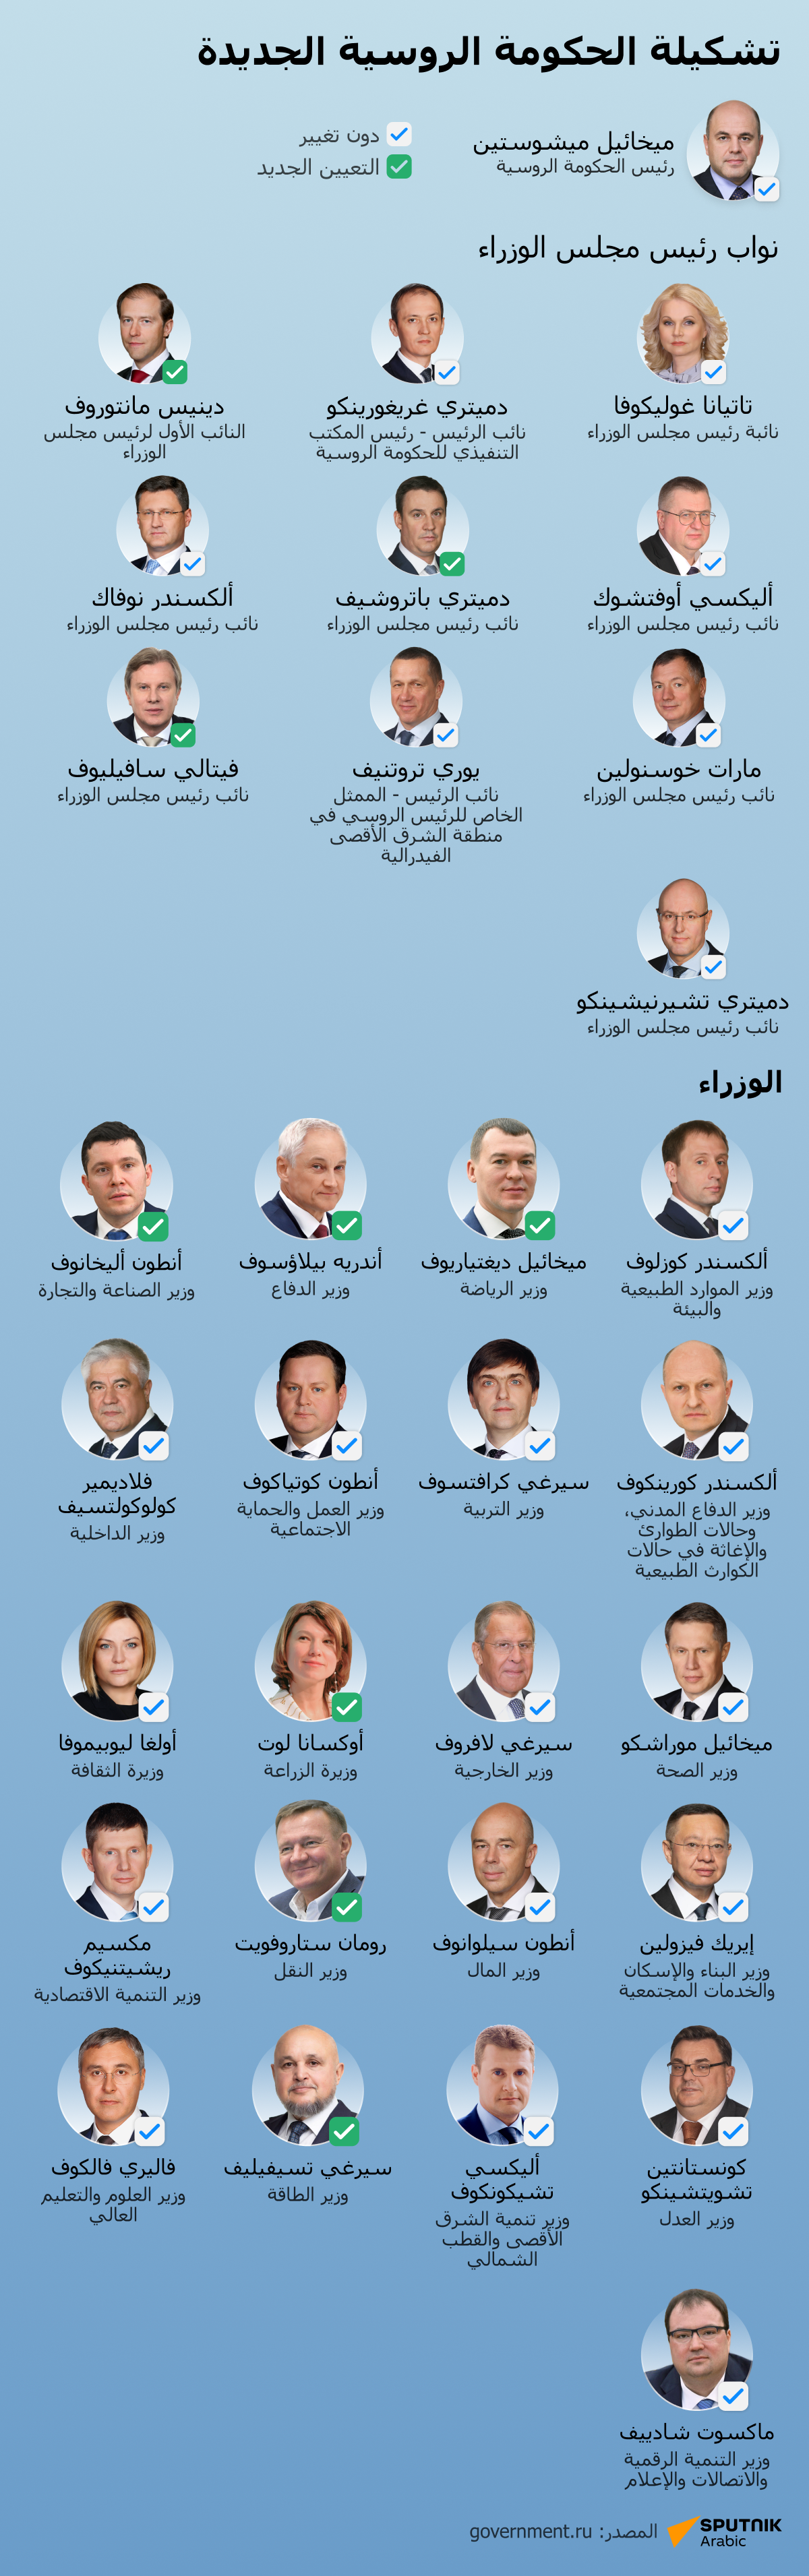 وزراء الحكومة الروسية الجديدة - سبوتنيك عربي